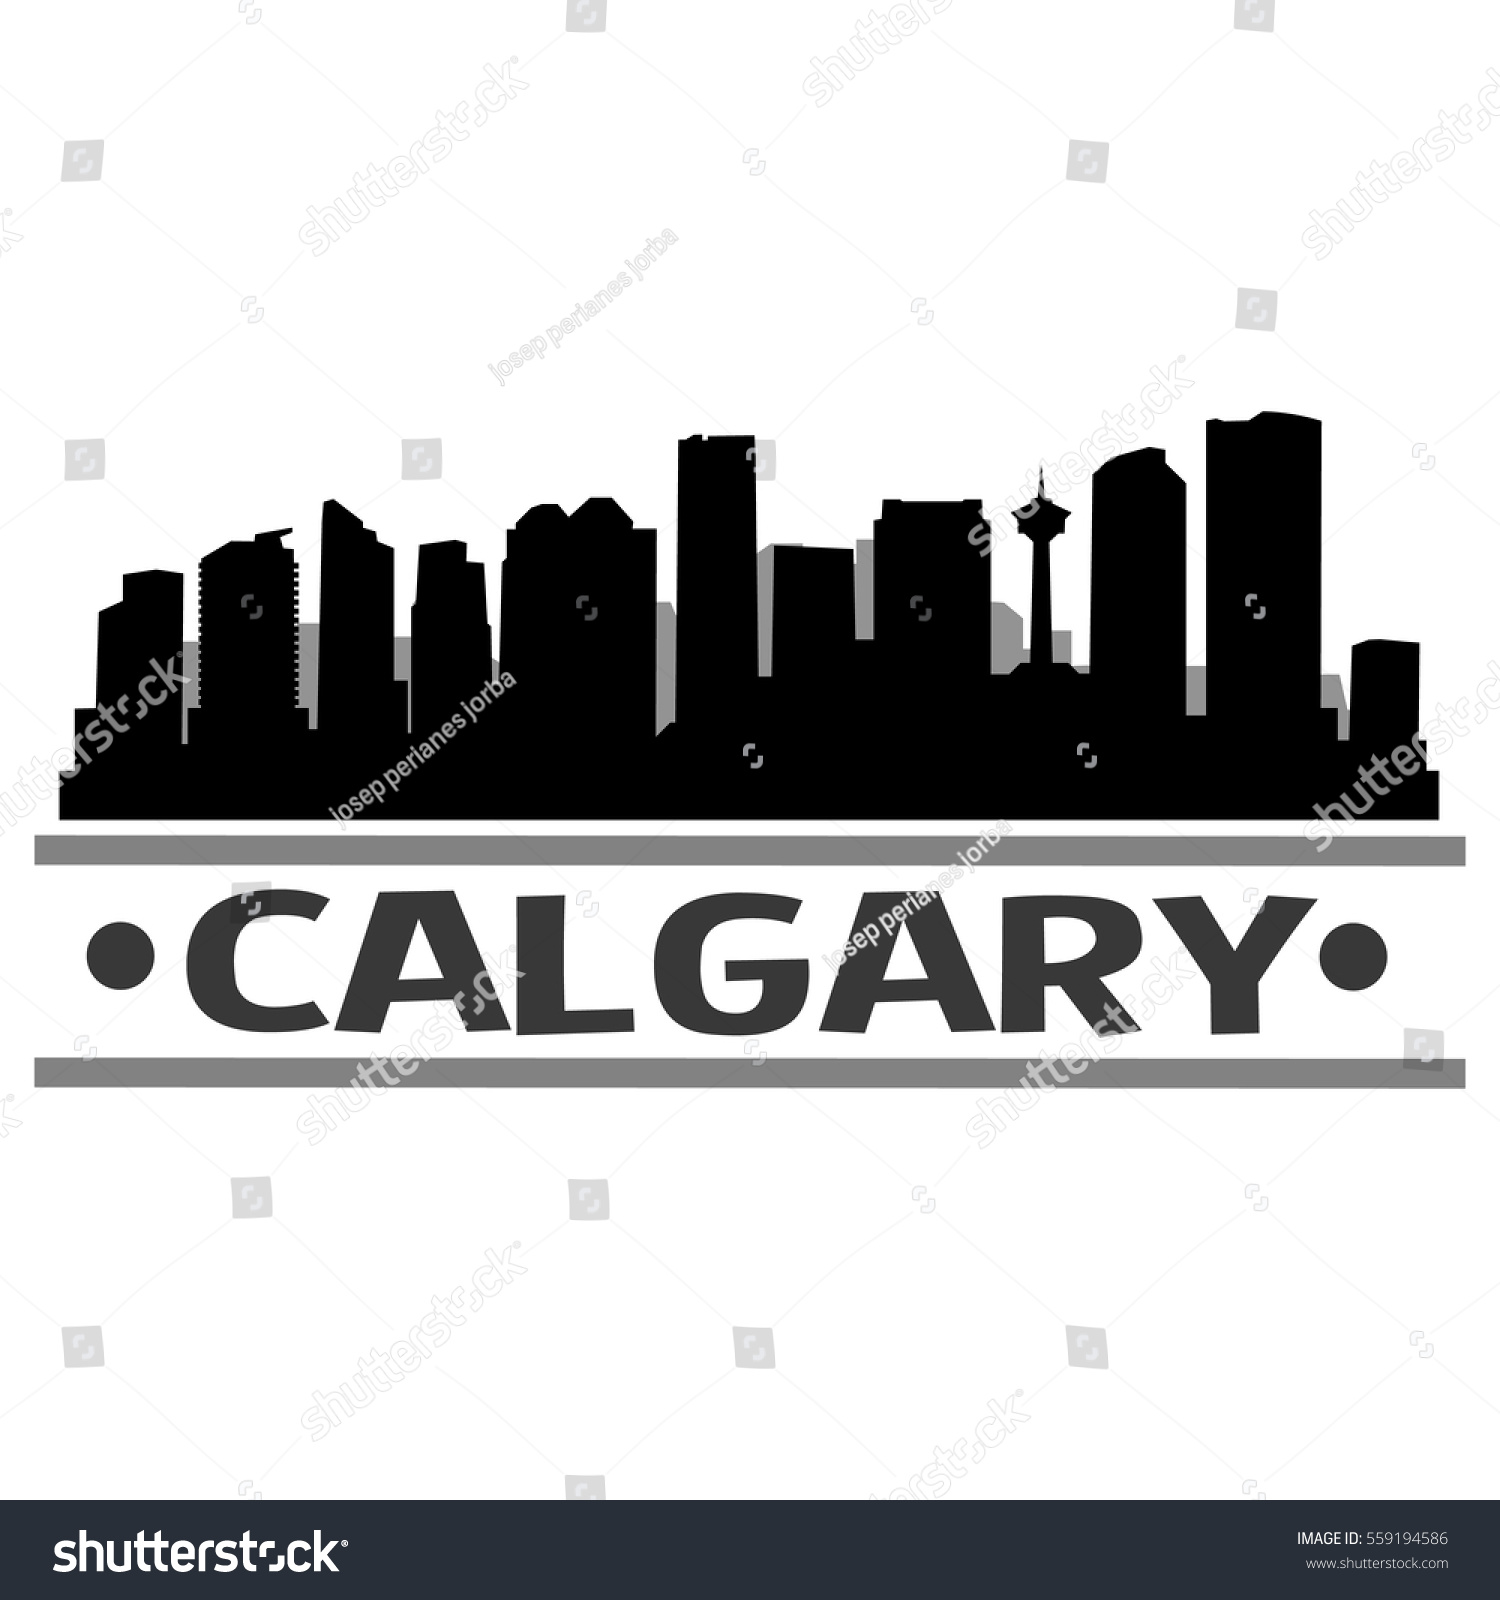 Calgary Skyline Silhouette Stock Vector 559194586 - Shutterstock